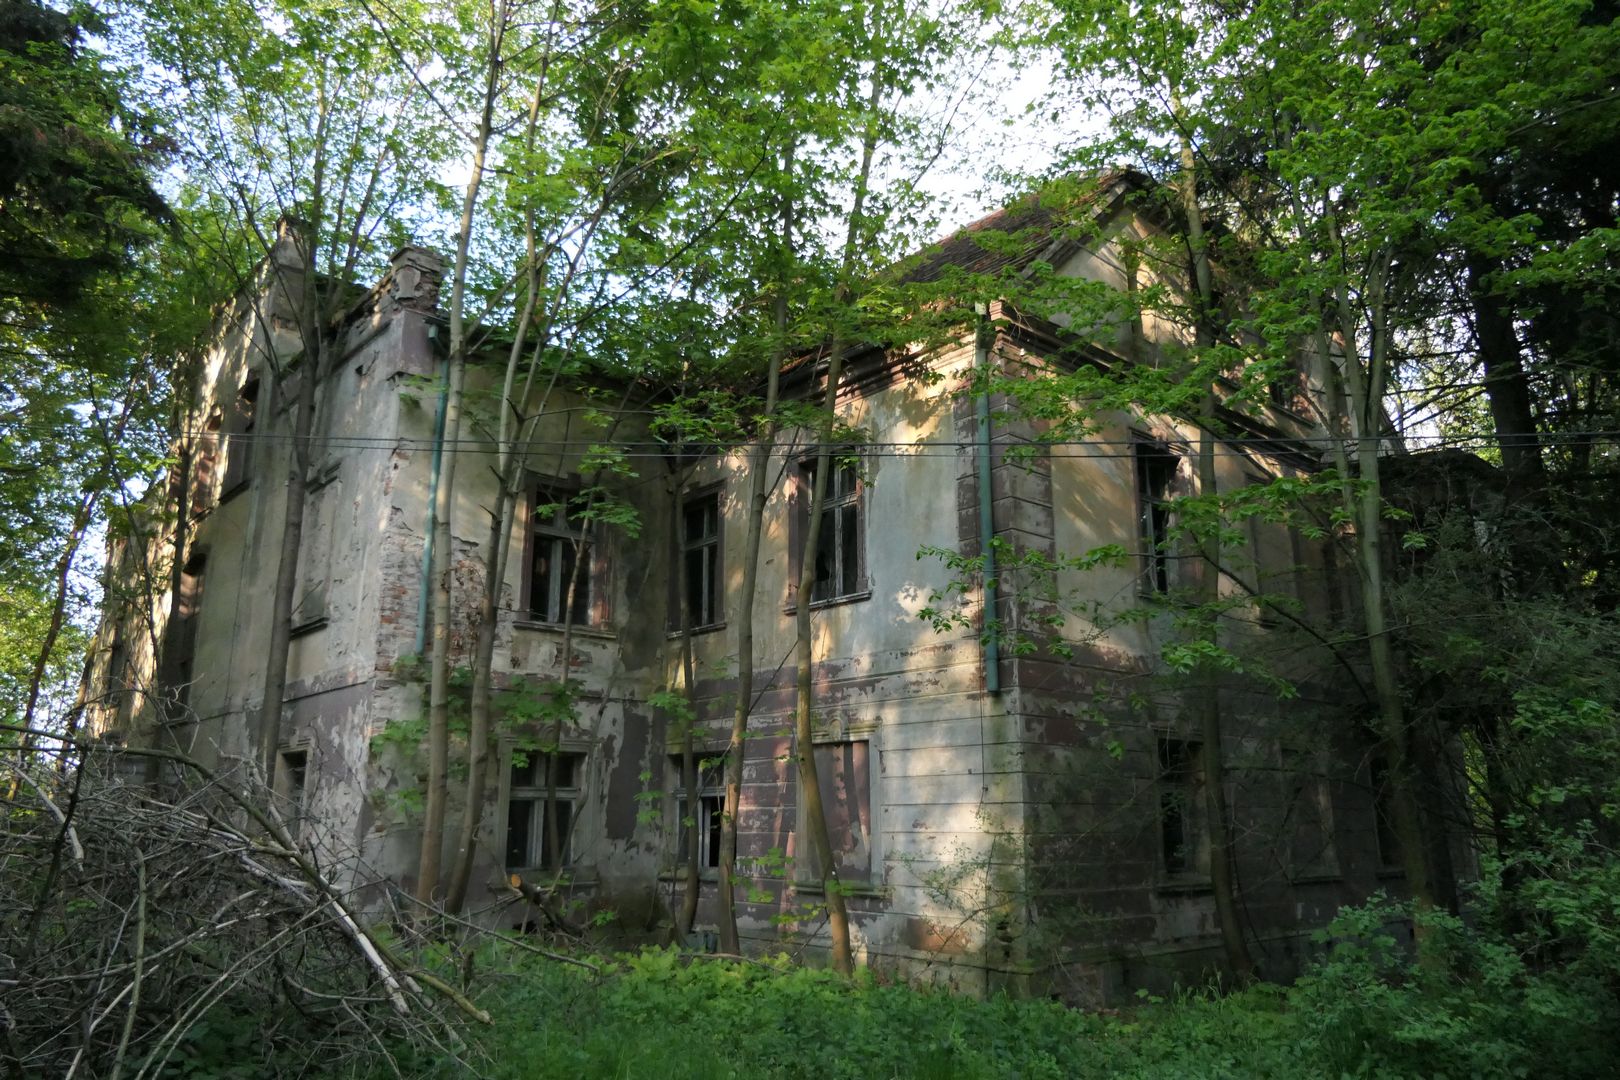 Pozostałości pałacu w Rudniku. Tu też zaczyna już rządzić las.